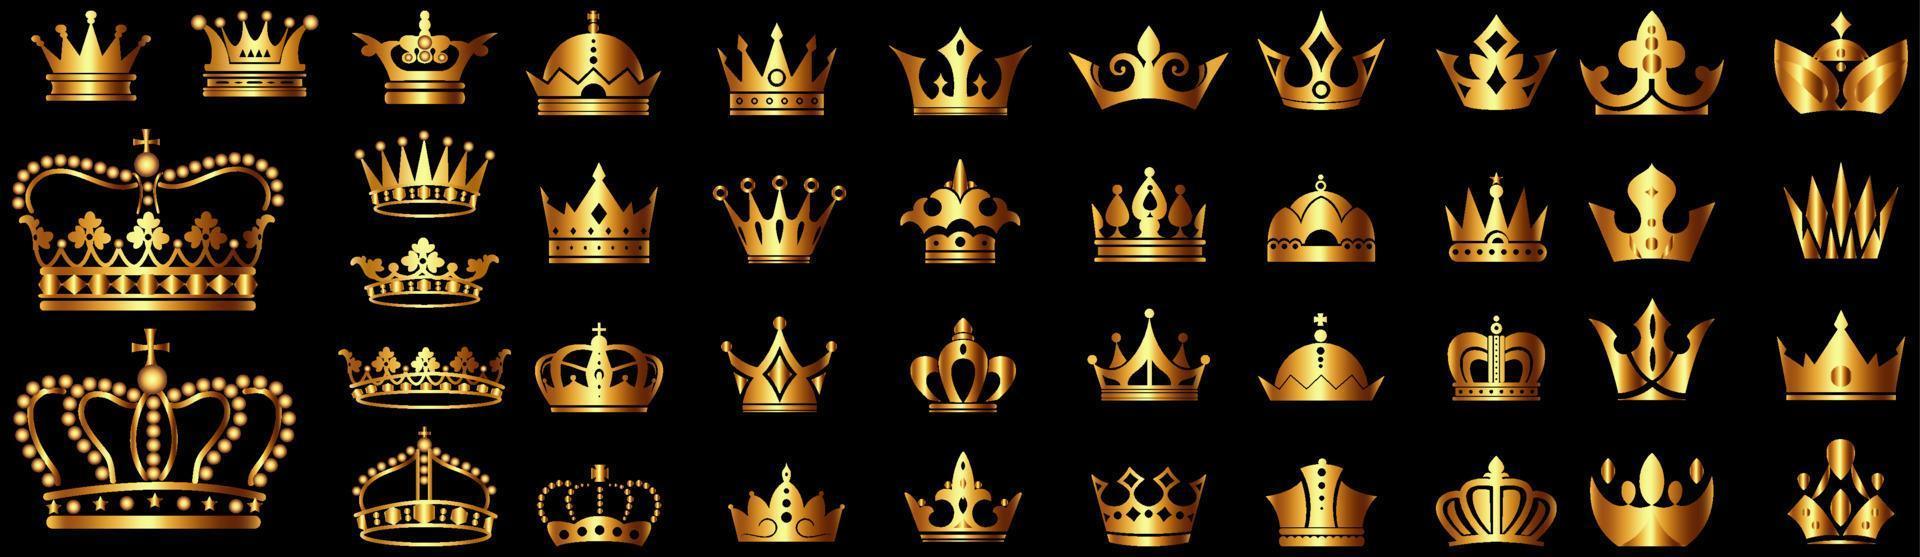 ensemble de couronnes en or. ensemble d'icône royale. collection d'icônes de couronne d'or. couronne en or réaliste. vecteur